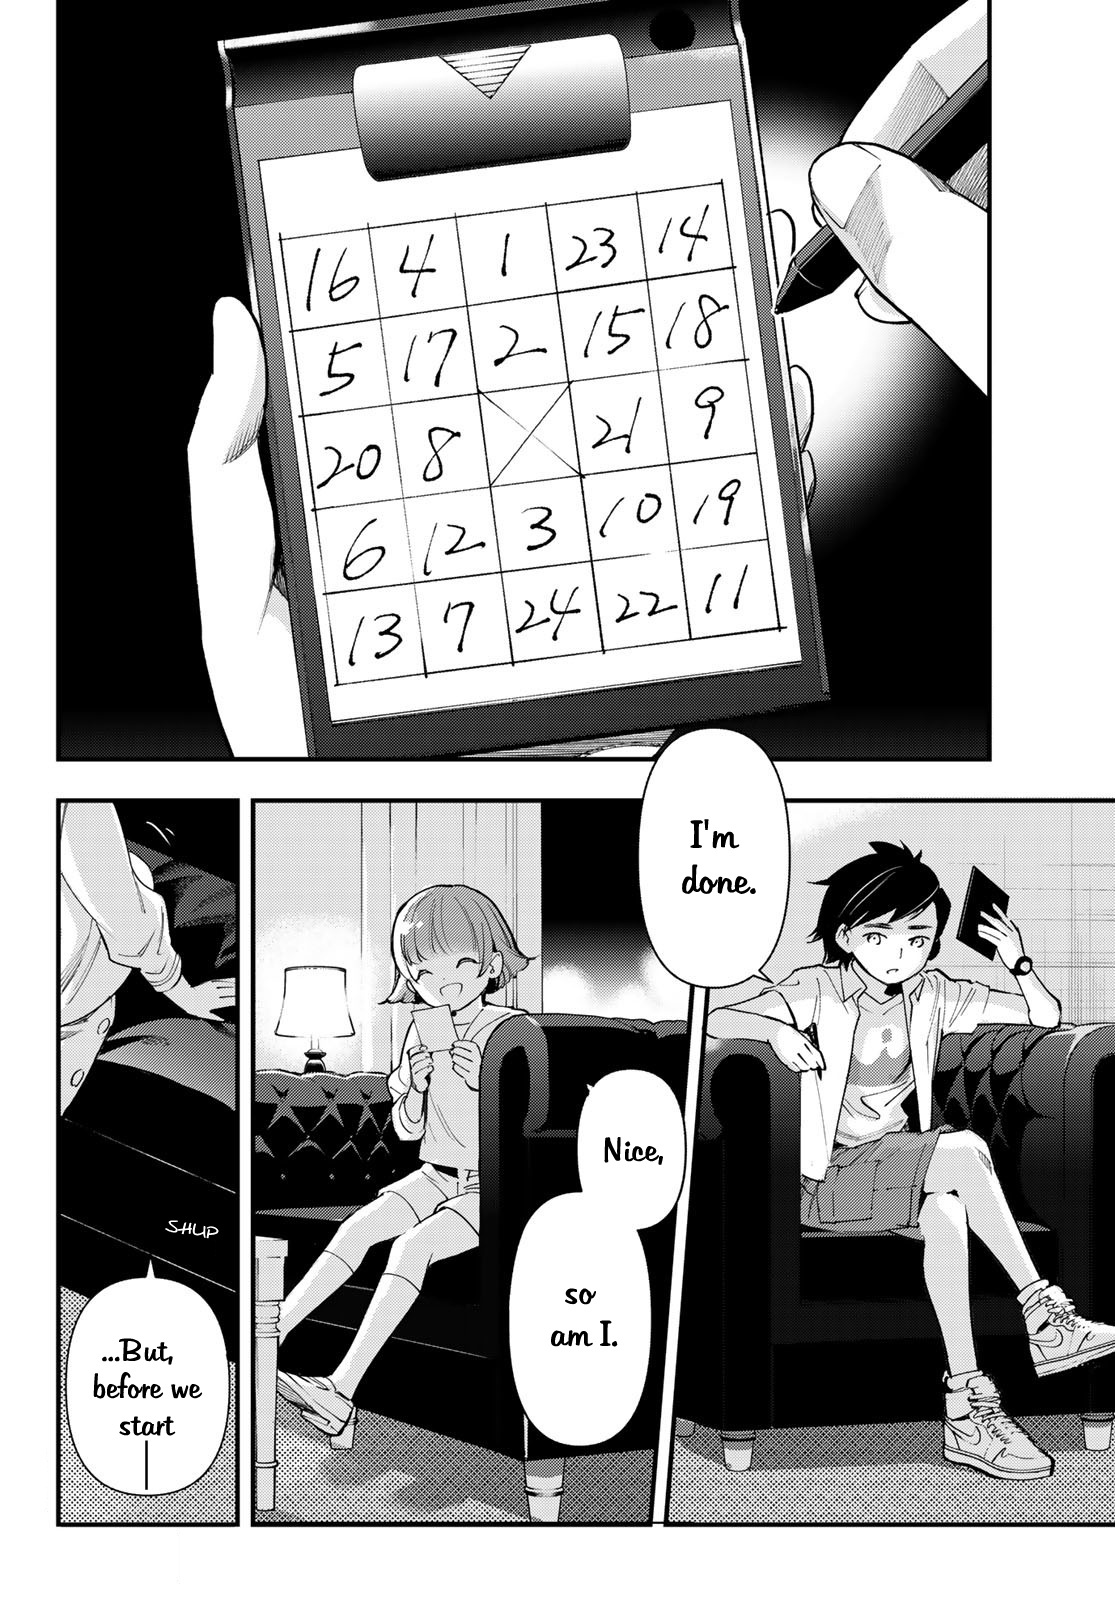 Shin Honkaku Mahou Shoujo Risuka Vol.5 Chapter 21: A Key Prescence!!! — Dice & Bingo - Picture 3